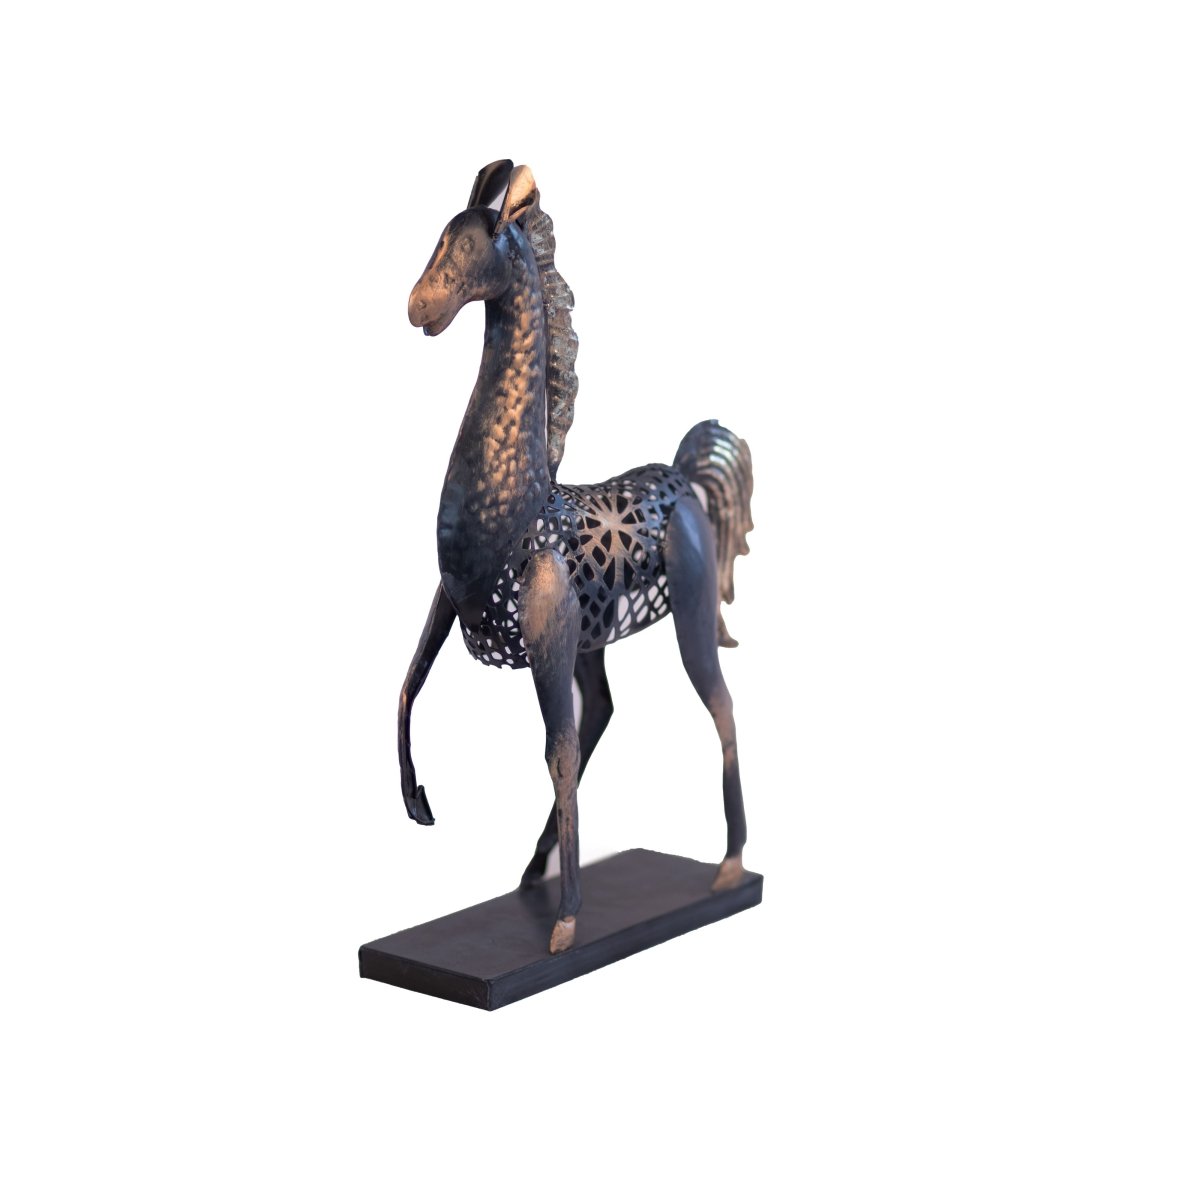 Kezevel Metal Horse Table Decor - Handcrafted Horse Figurine Antique Black Golden Horse Showpieces for Home Decor, Table Statue, Size 30.5X10.2X47 CM - Kezevel